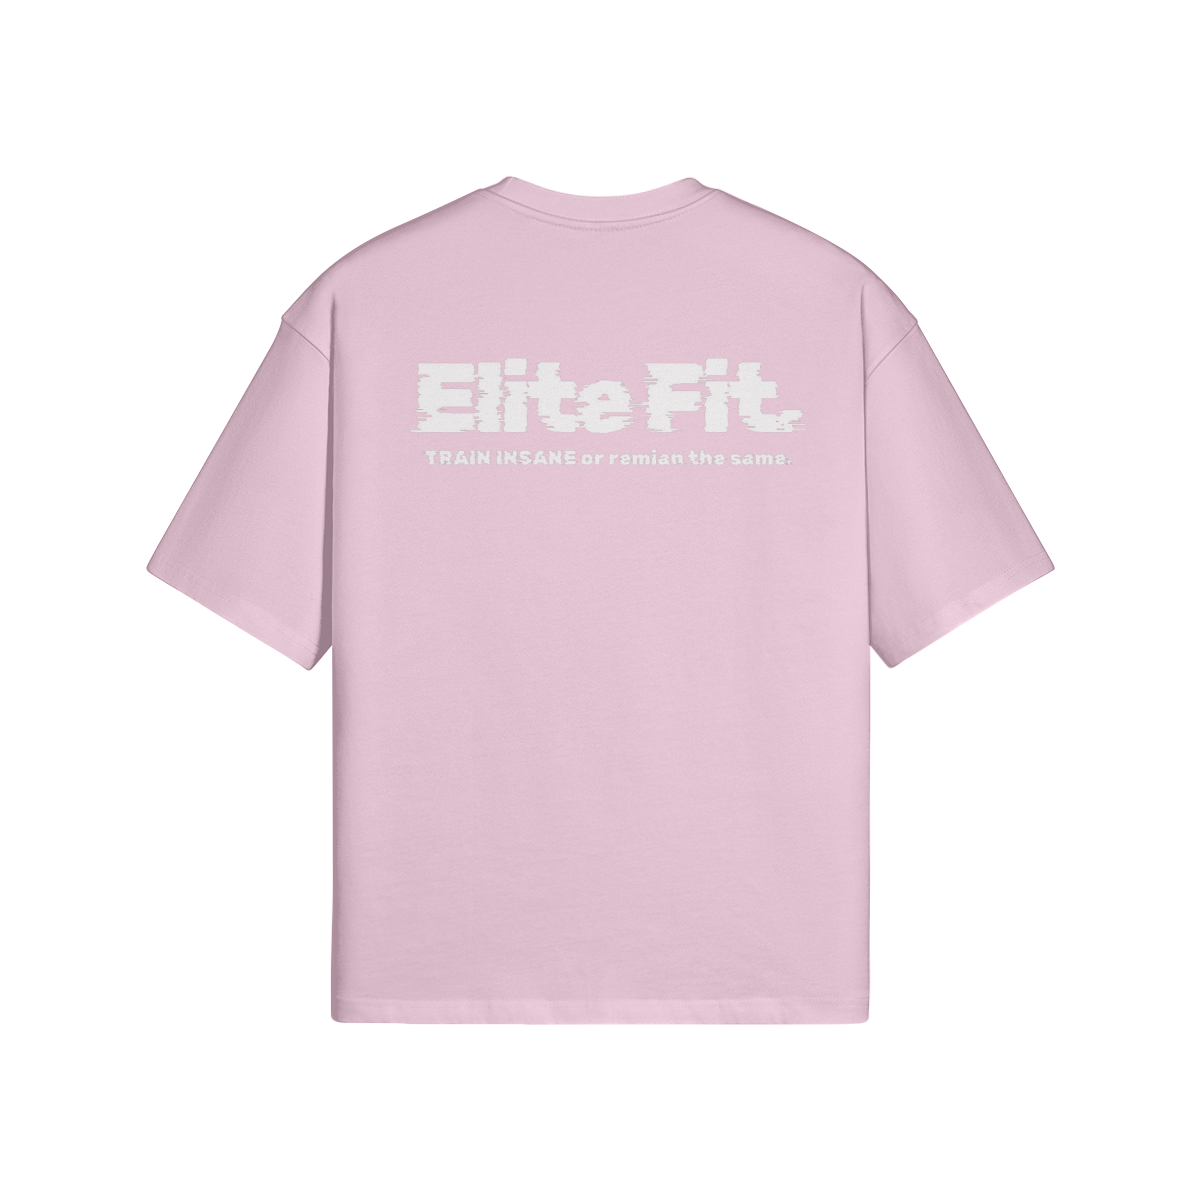 EliteFit Shirt Pink